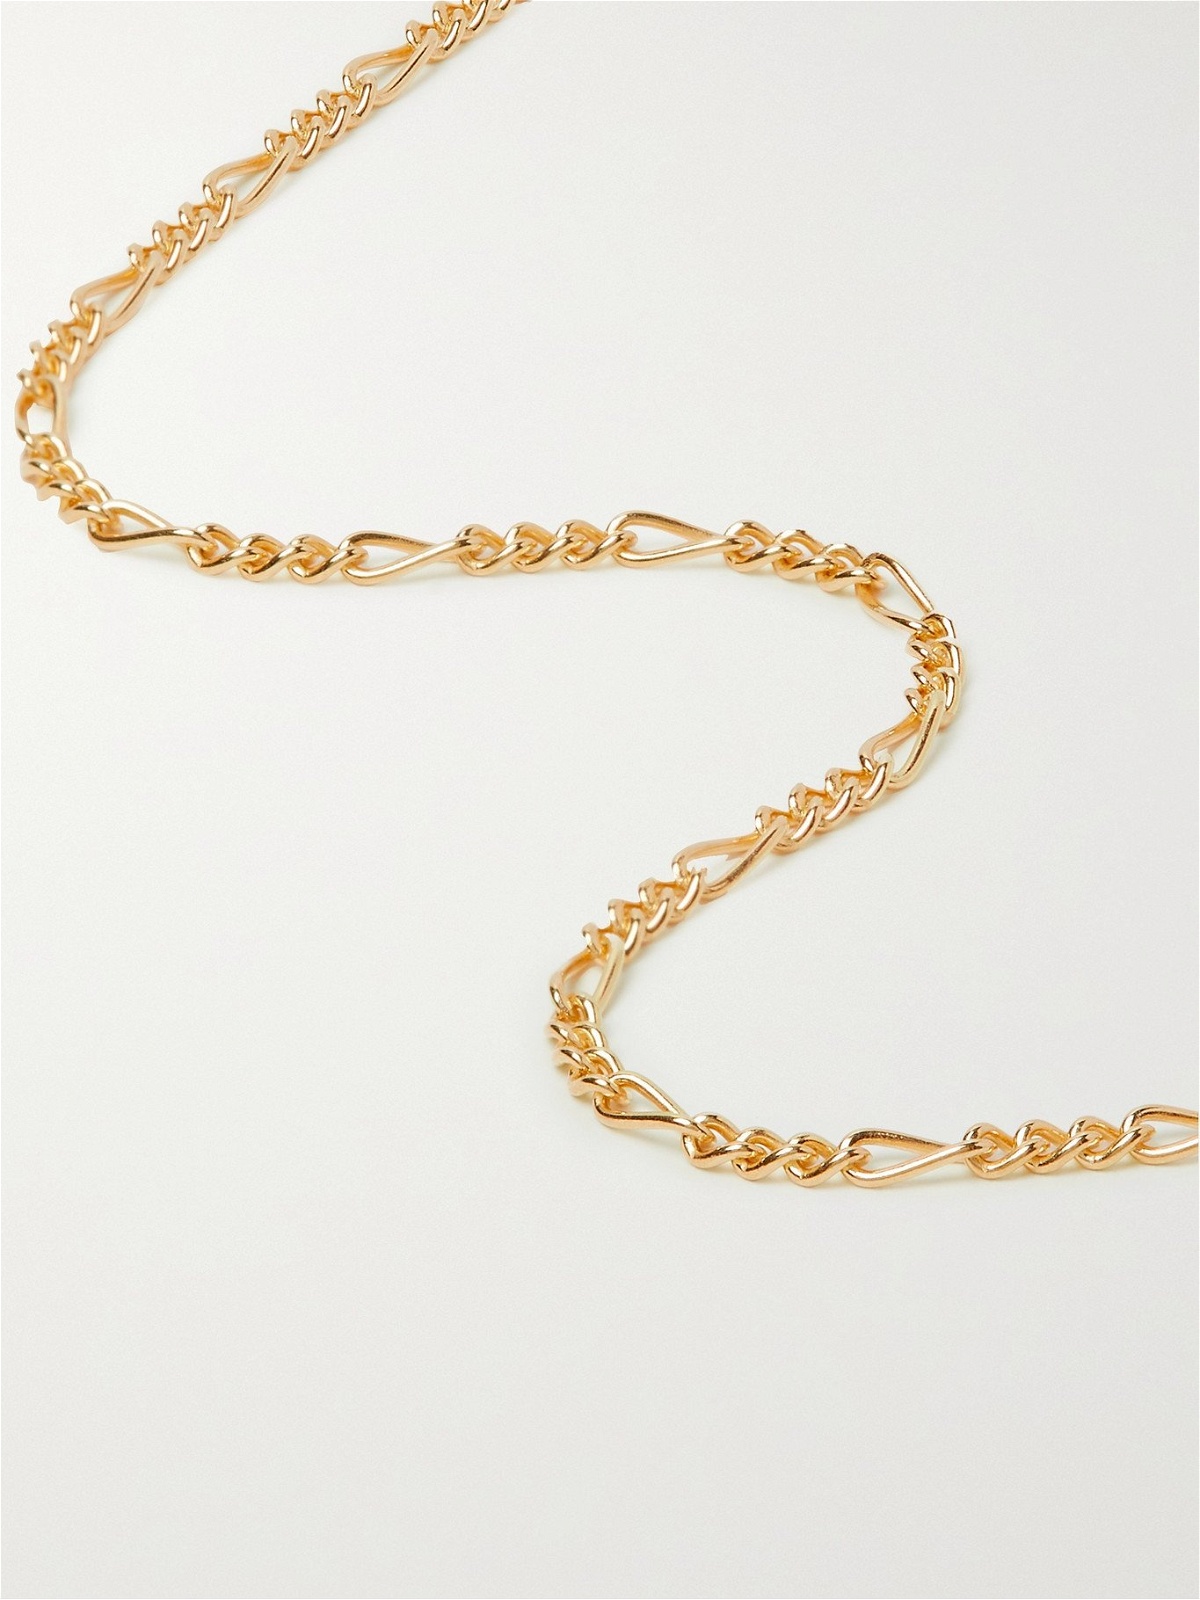 Volcan Type Chain Necklace, Gold Vermeil | Men's Necklaces | Miansai